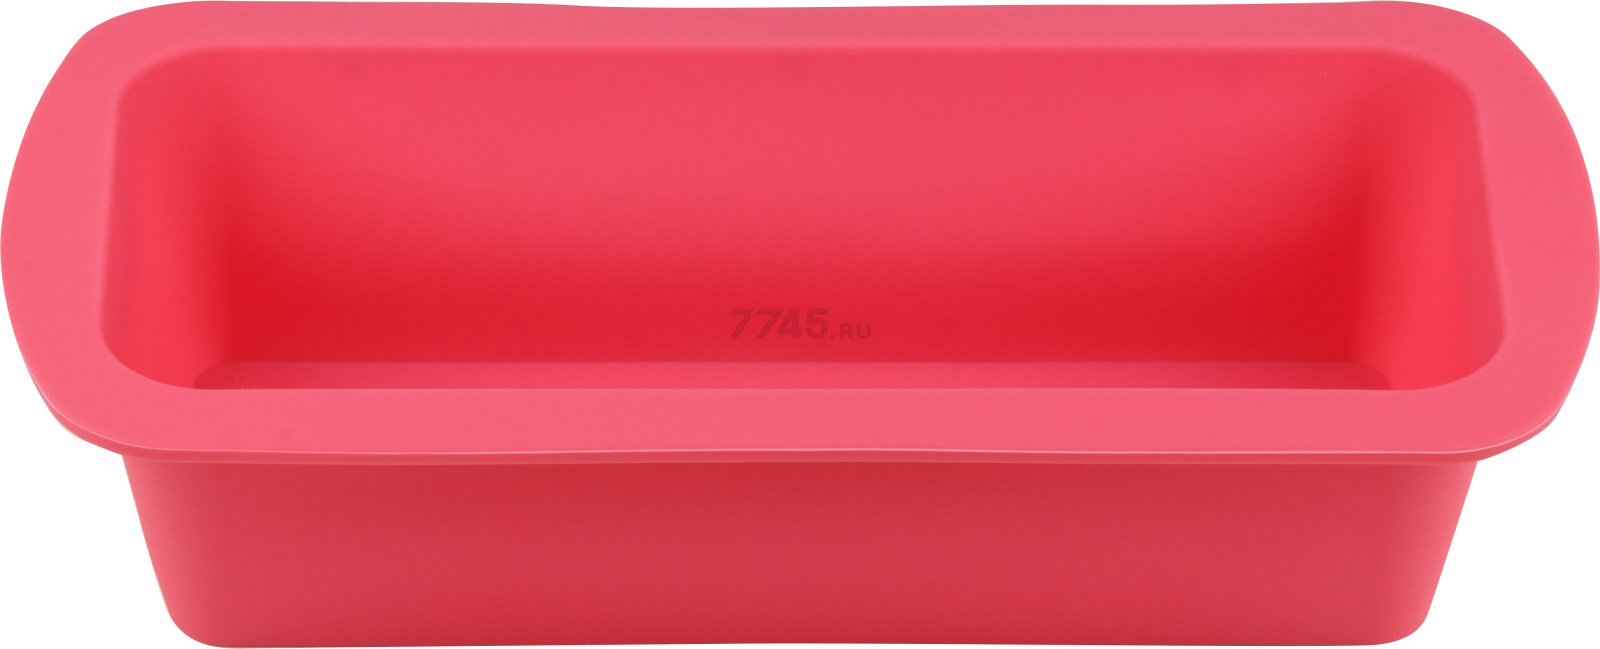 Форма для выпечки силиконовая прямоугольная 27х13,5х6 см PERFECTO LINEA Fruit Dove розовый (20-000219)